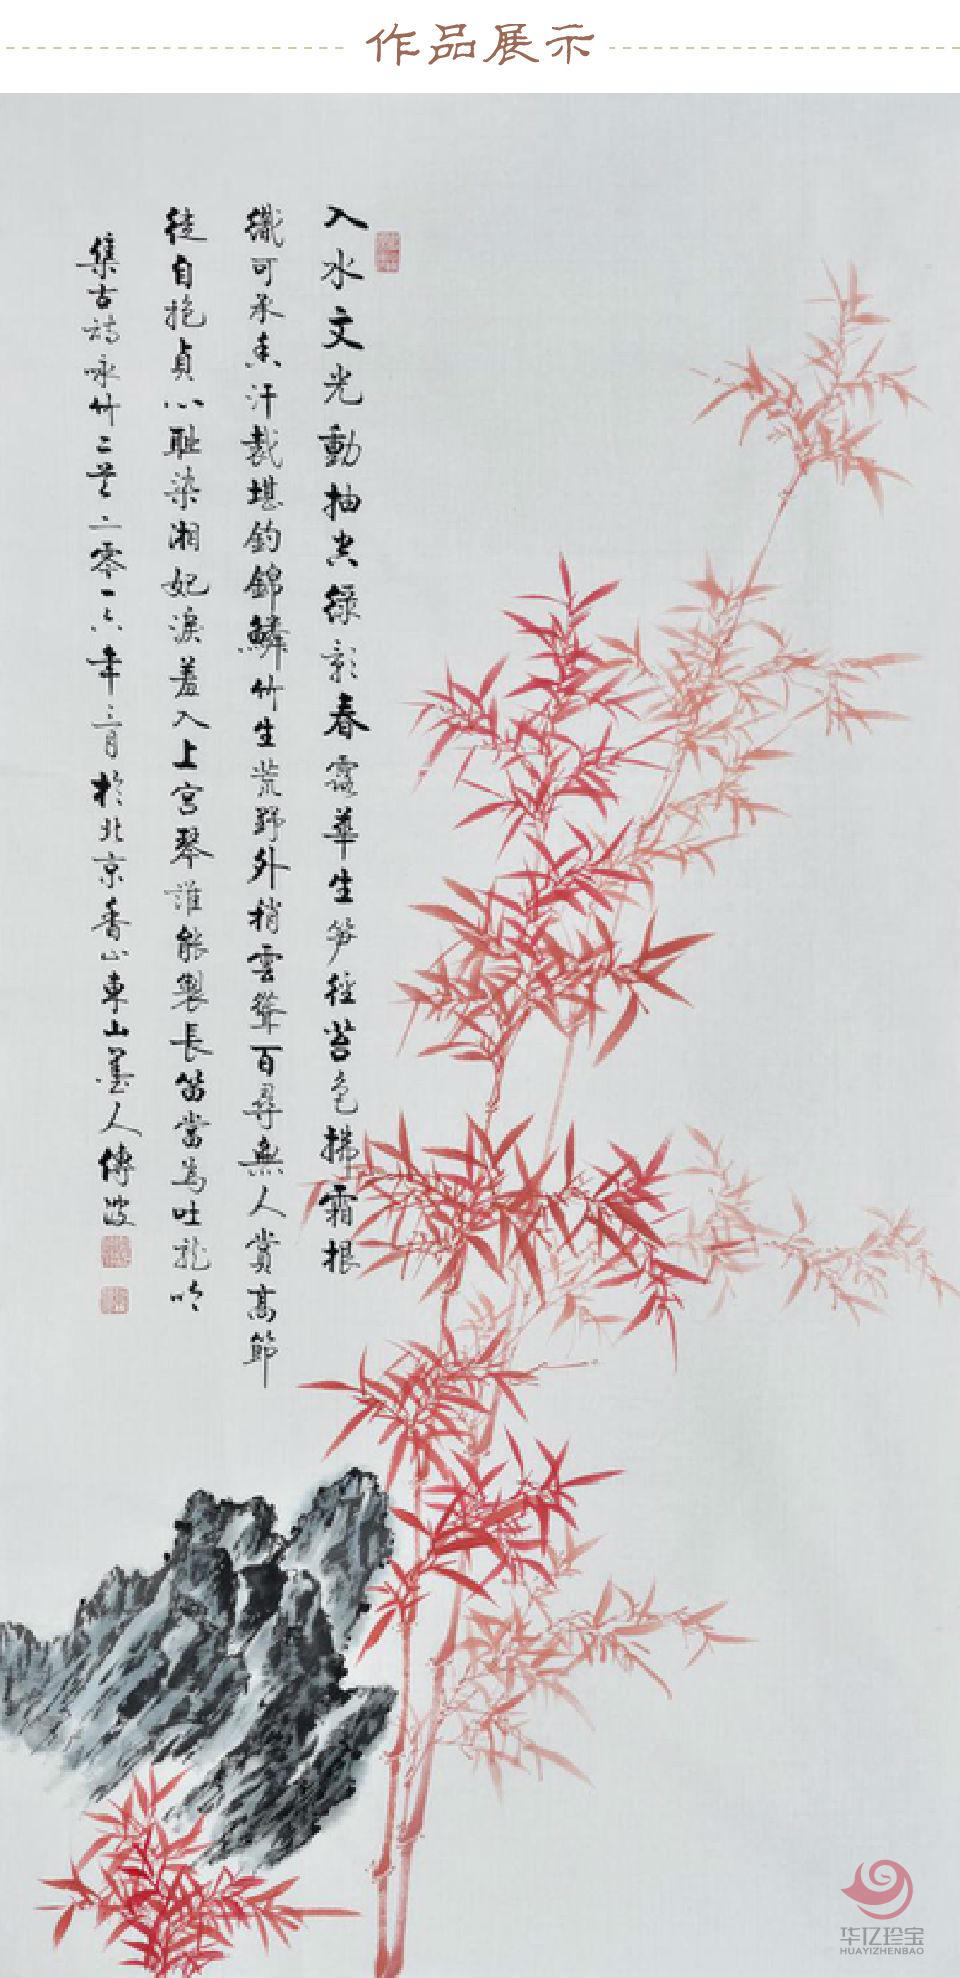 李传波《竹·入水文光动》红色竹子作品